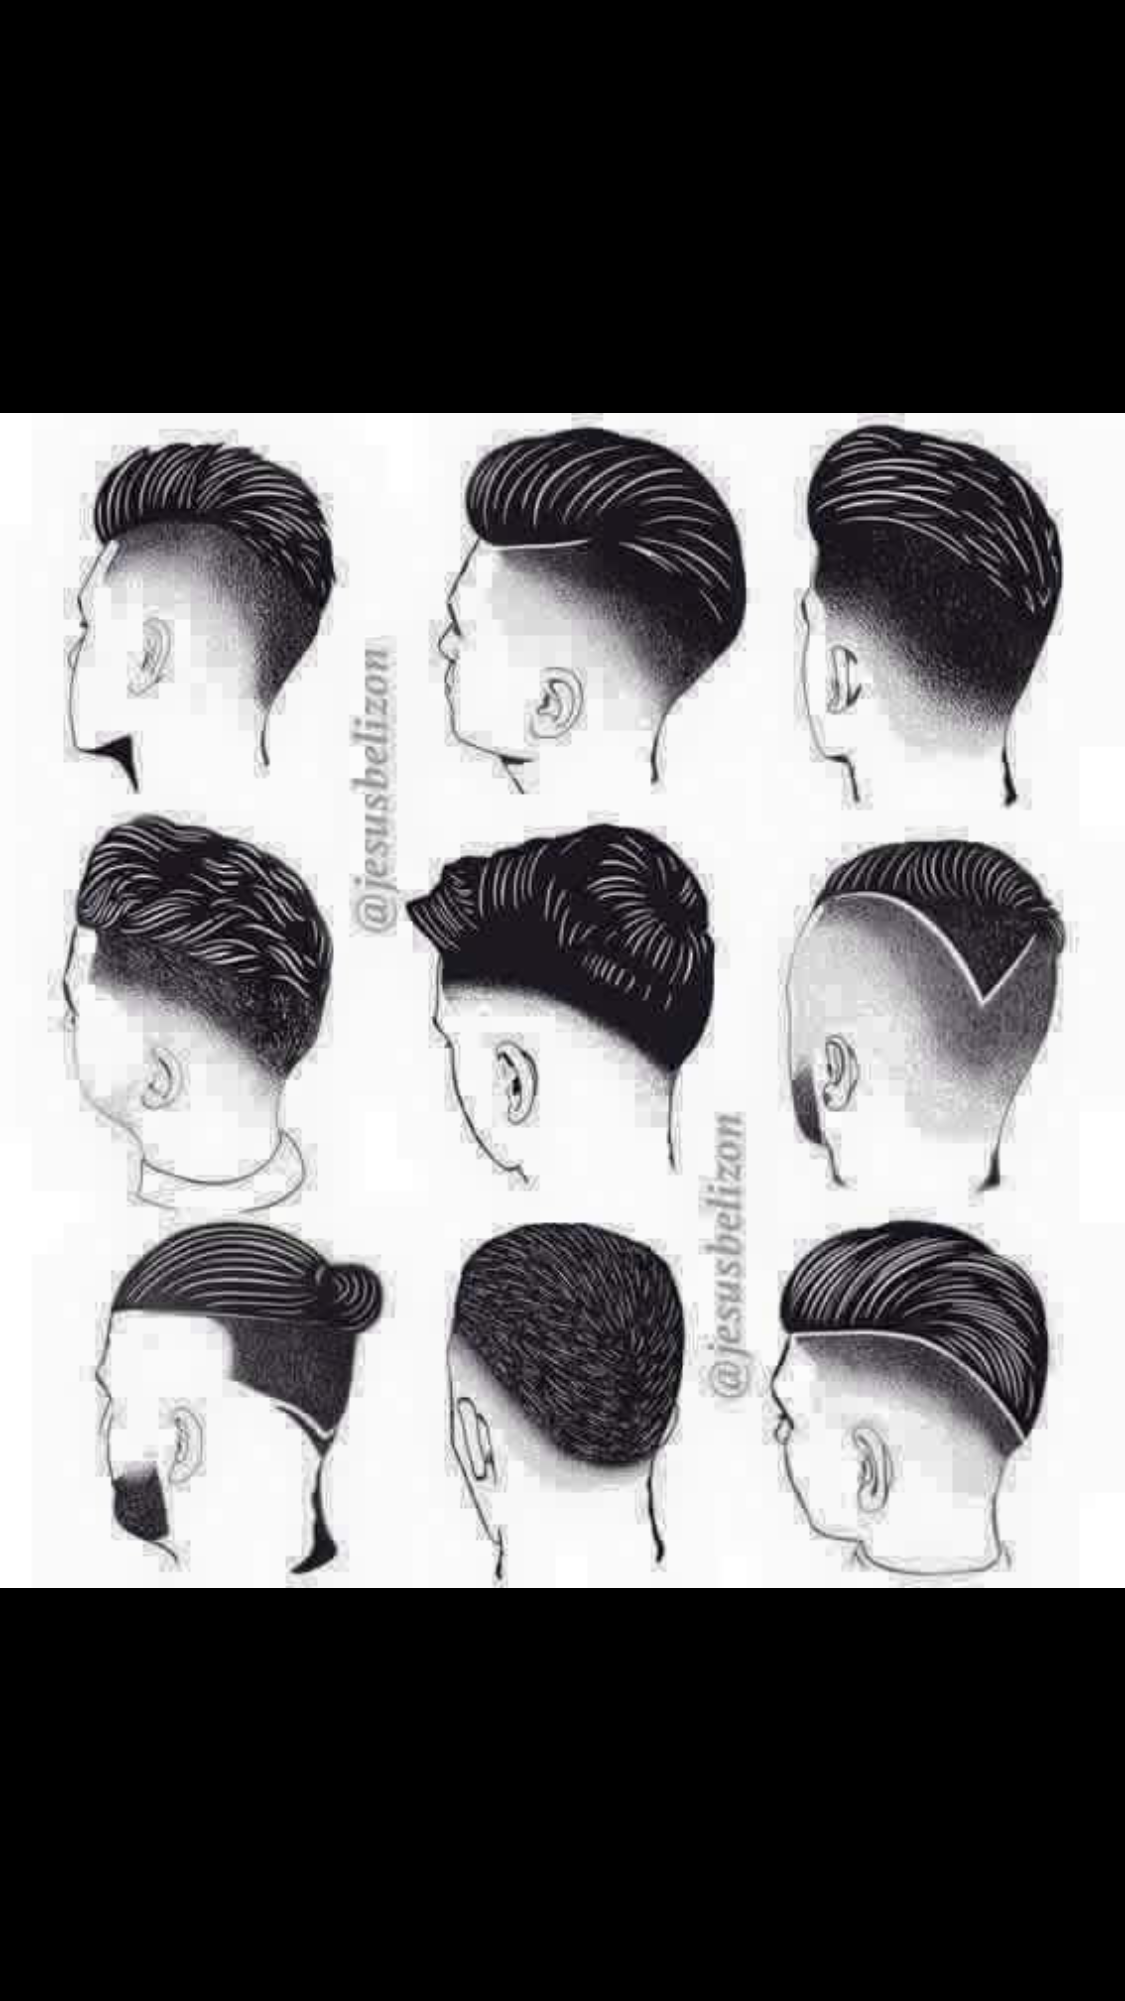 髮型作品參考:Men hair